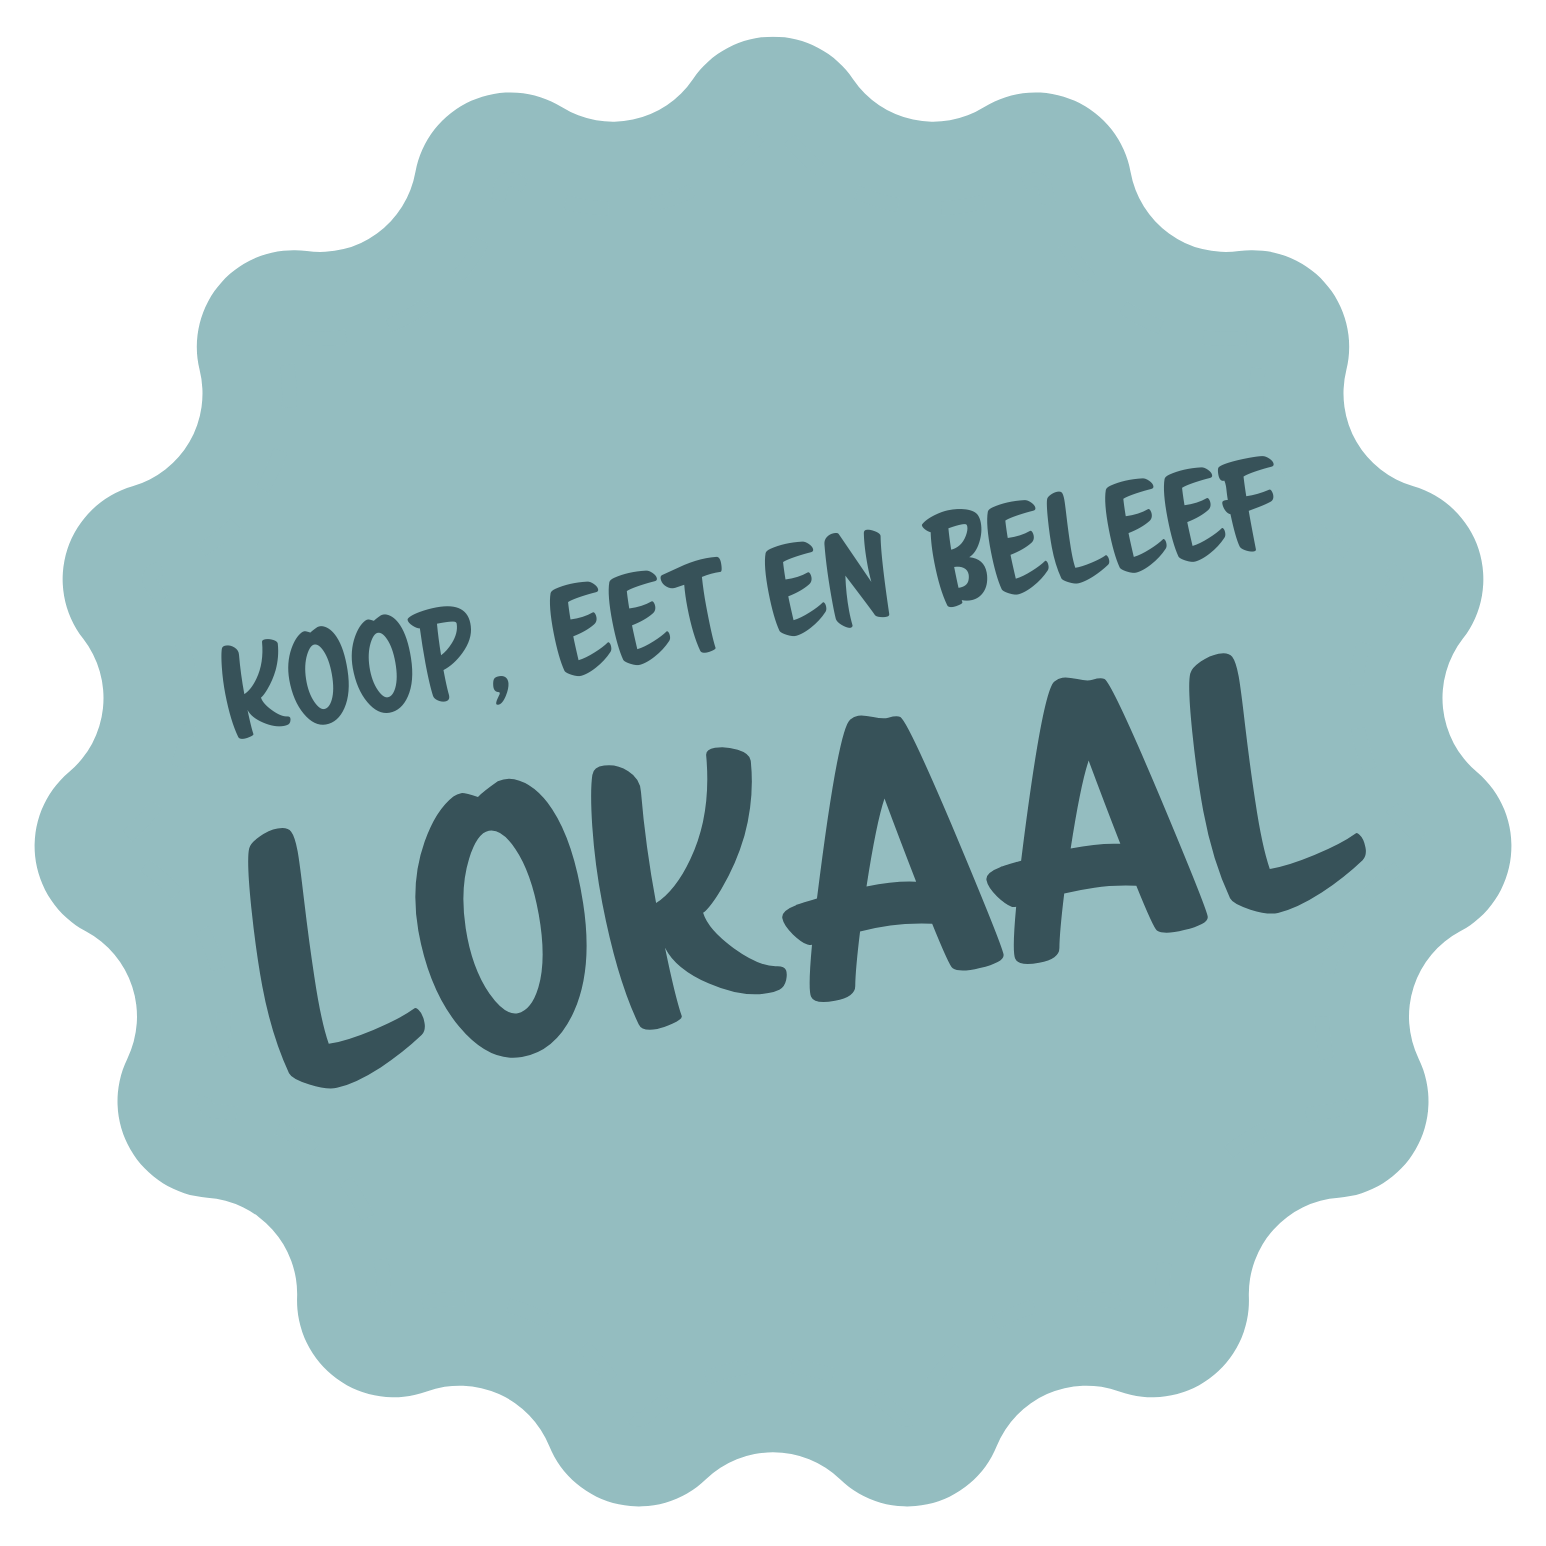 KOOP, EET EN BELEEF LOKAAL logo